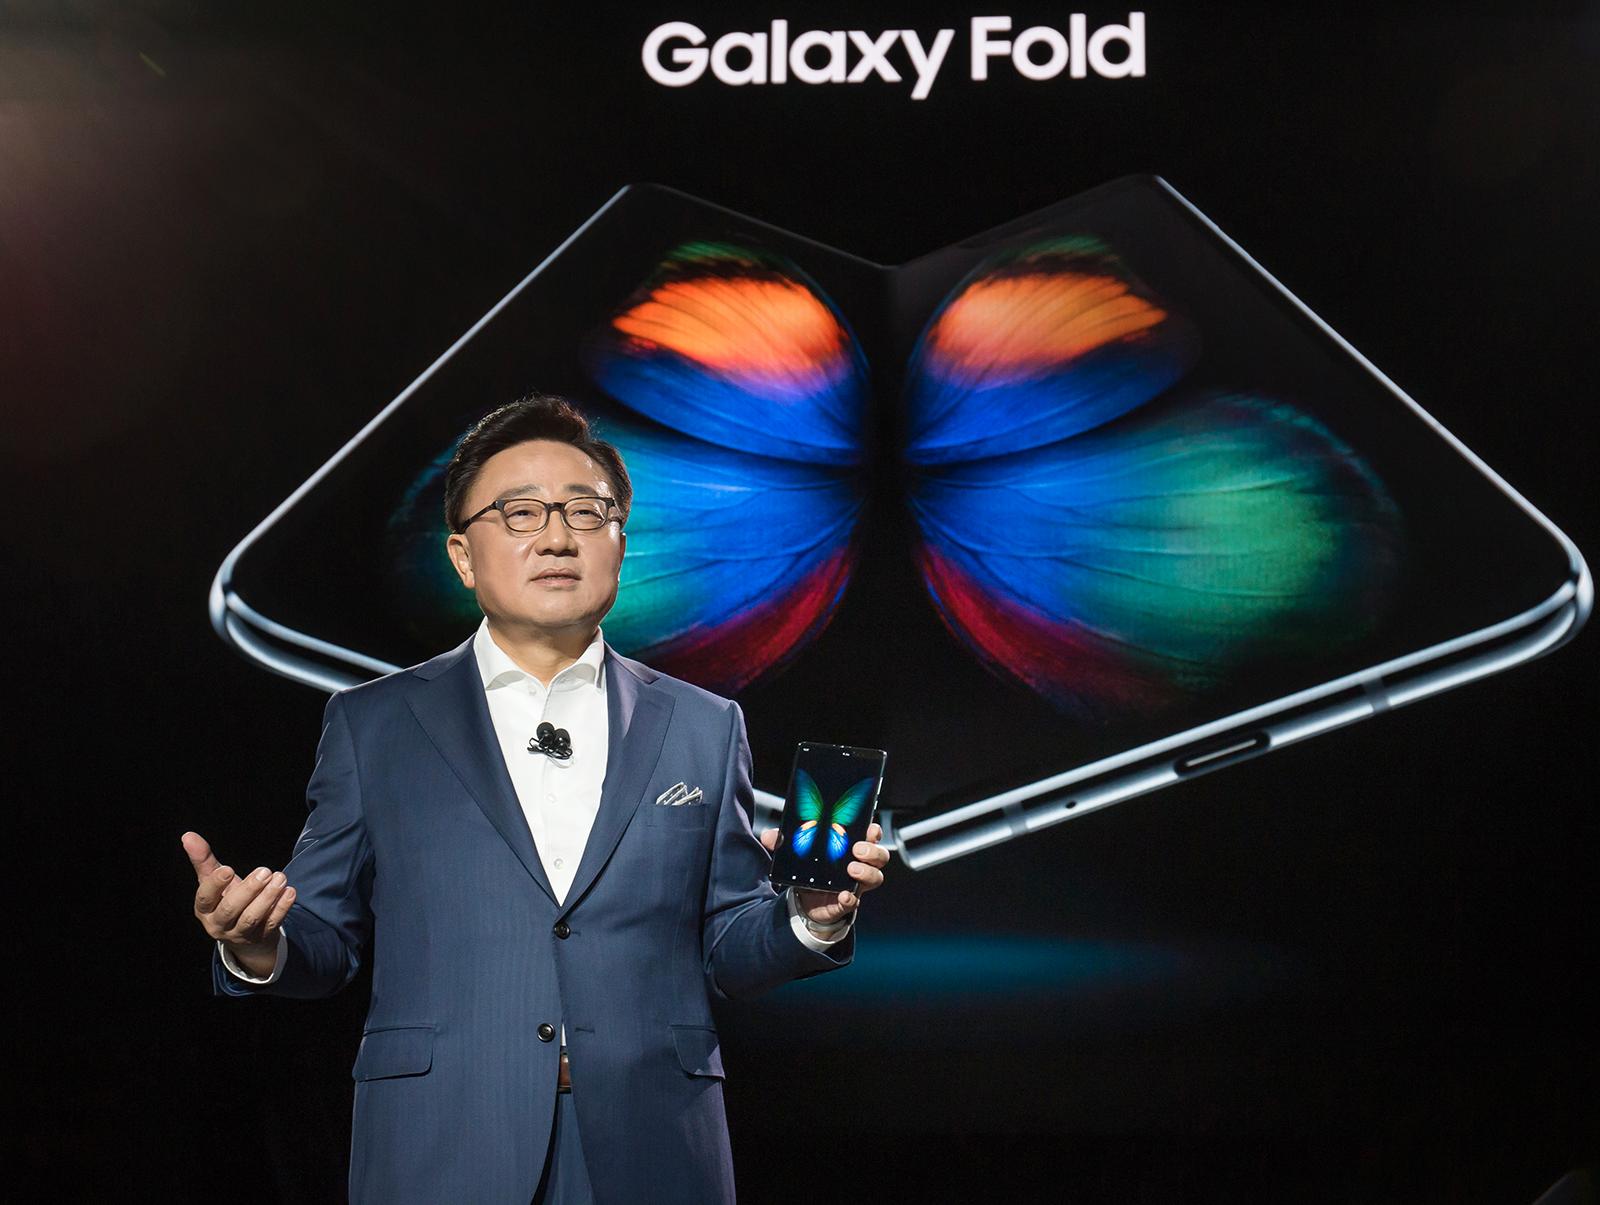 Samsungs mobilsjef DJ Koh viste frem Galaxy Fold samtidig med lanseringen av Galaxy S10-modellene. Først nå skulle telefonen vært i salg - men hva den endelige salgsdatoen blir er foreløpig ukjent.